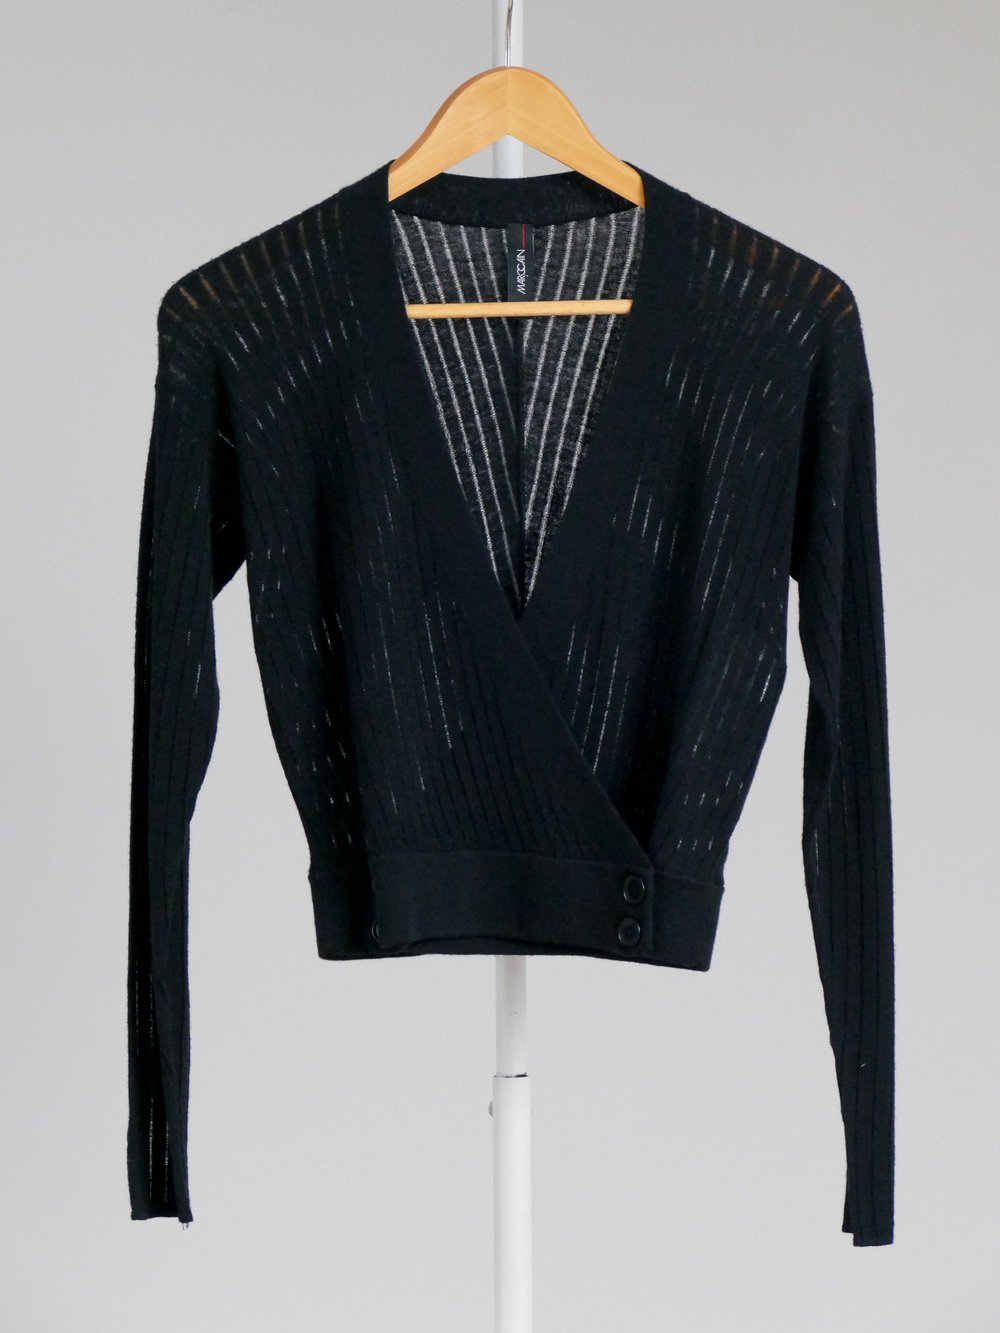 Gilet cache-coeur noir en laine et cachemire MARC CAIN — Vetement original  femme fashion, tenue mode chic haut de gamme